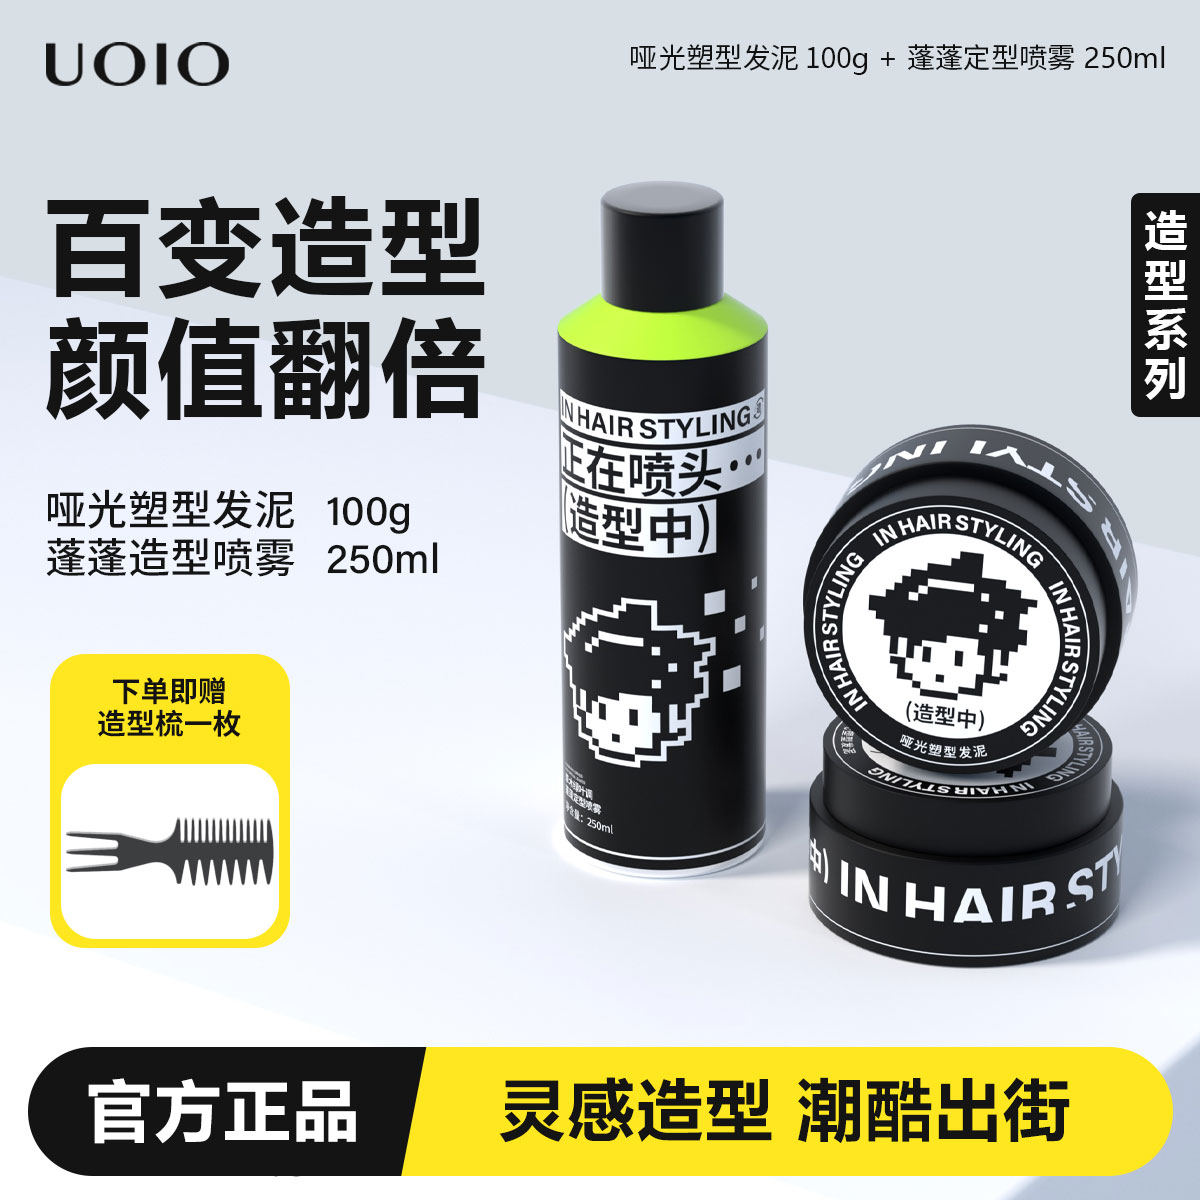 uoio发泥男士发胶定型喷雾持久头发造型自然蓬松哑光发蜡塑型干胶